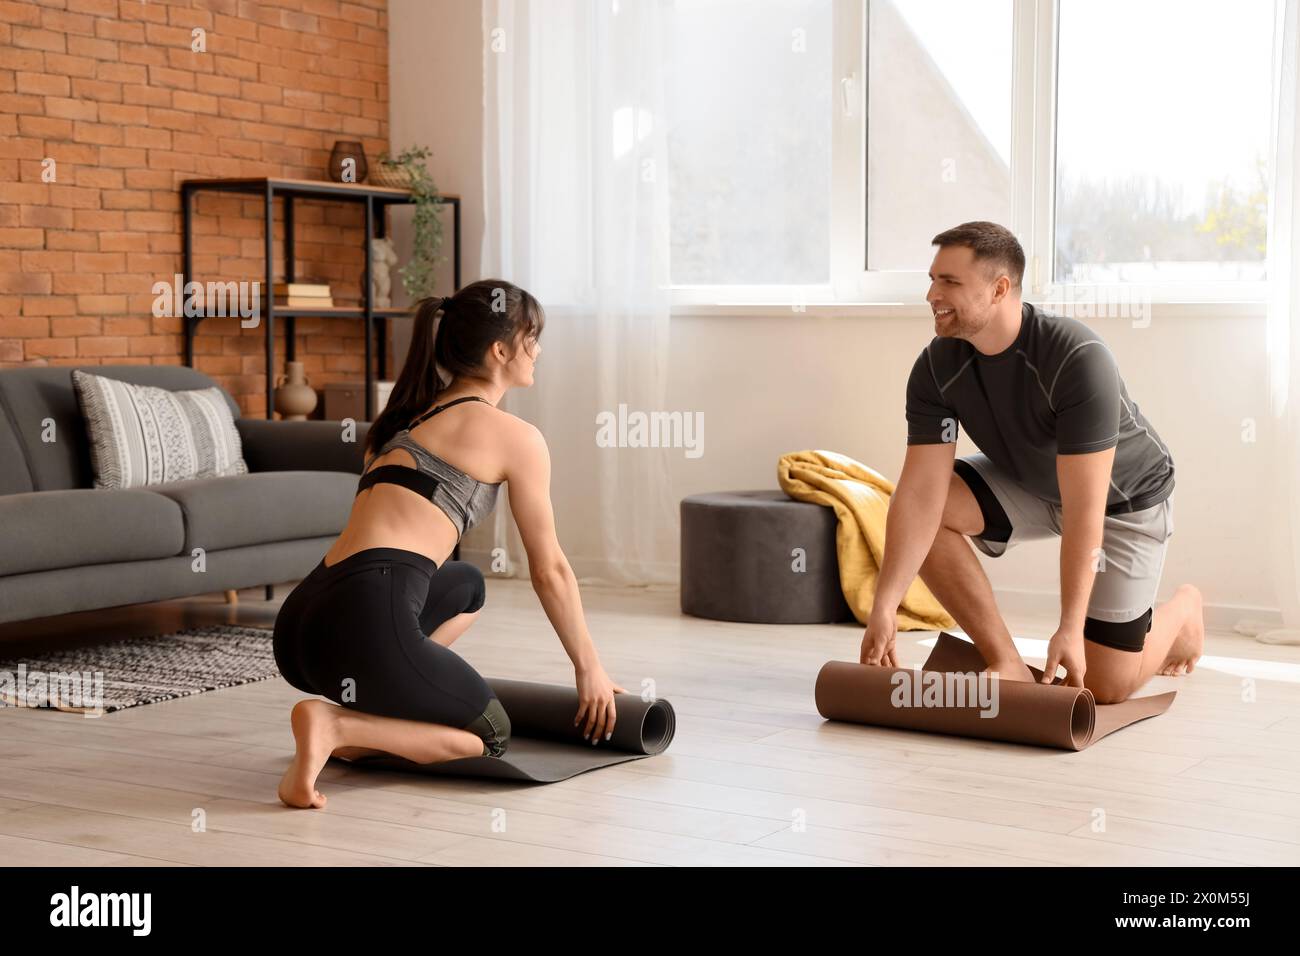 Sportliches junges Paar, das sich im modernen Wohnzimmer auf Yoga vorbereitet Stockfoto